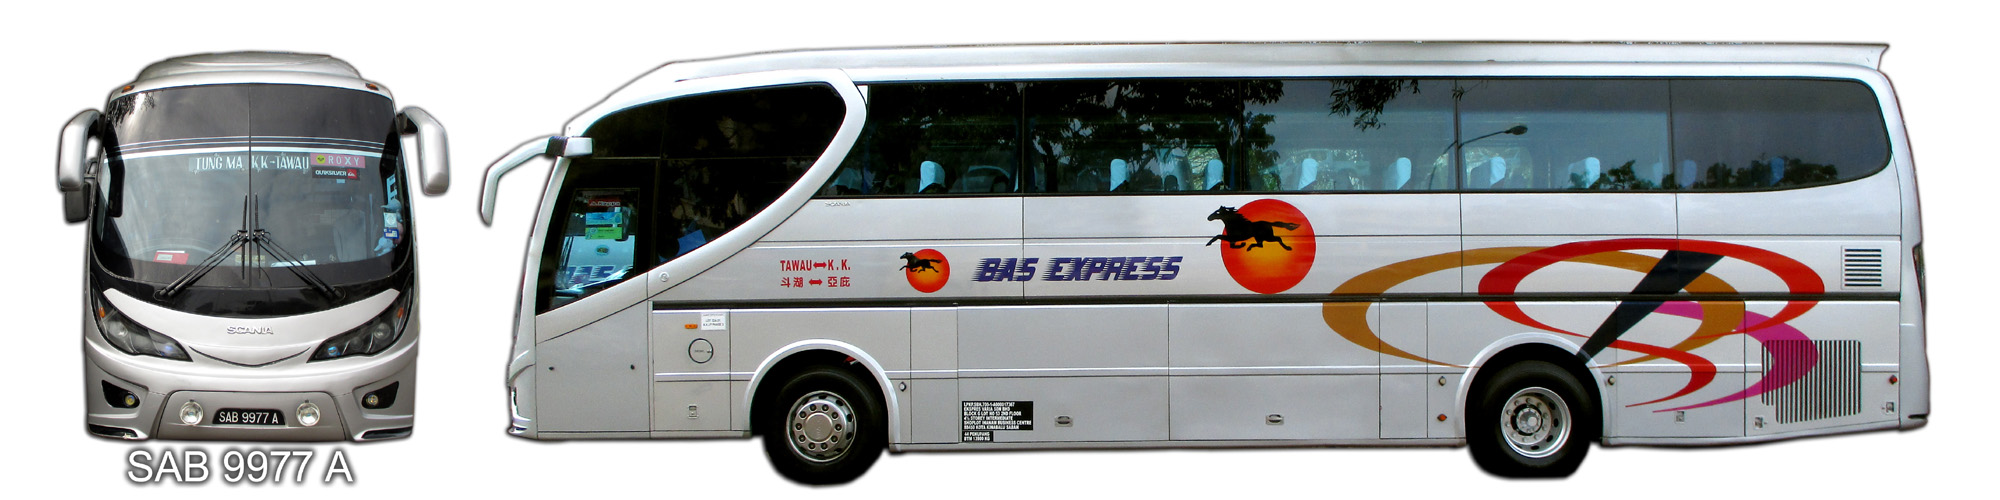 Tung Ma Express Tawau - Kota Kinabalu - Tawau